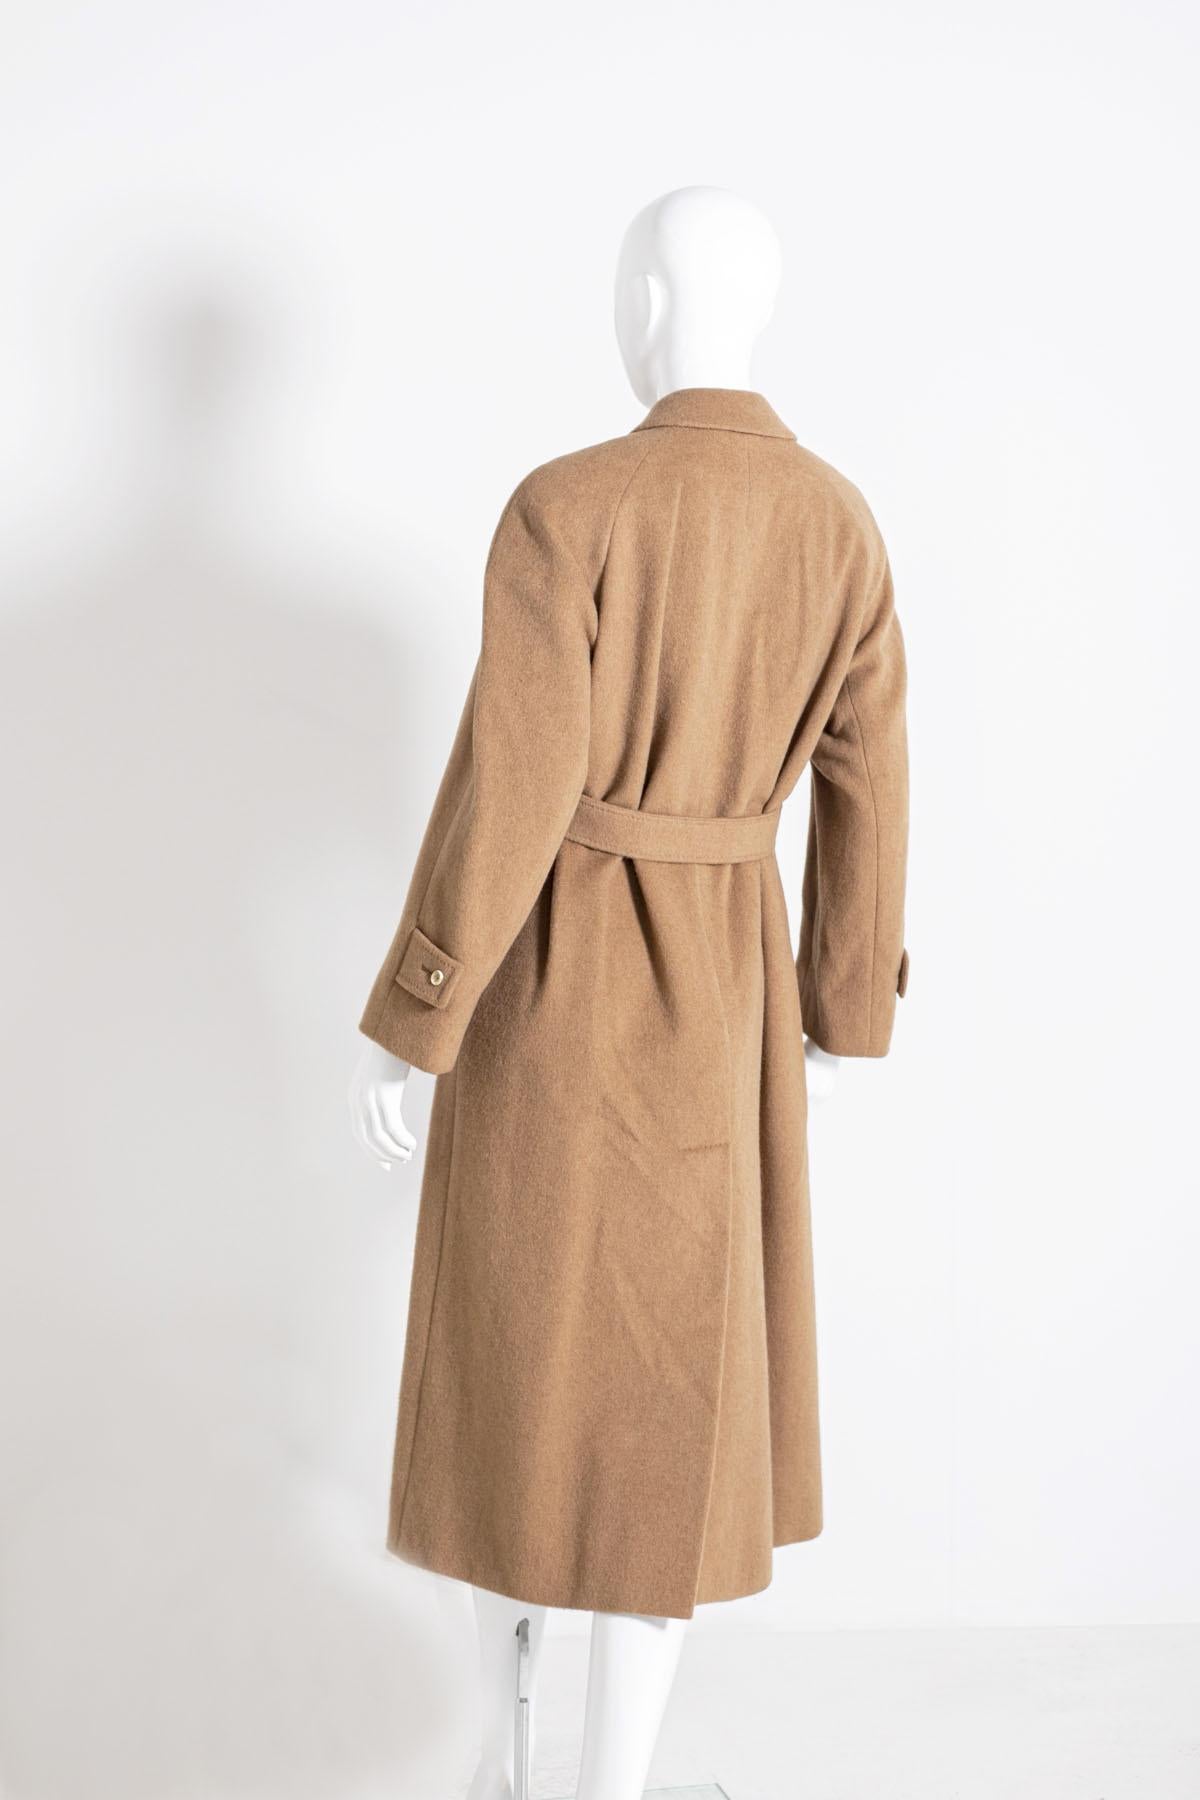 Magnifique manteau de femme Aquascutum des années 90, en 100% poils de chameau dont il prend la couleur.
Sa ligne est classique, avec cinq boutons sur le devant et deux poches latérales confortables, longueur cheville. L'intérieur est doublé de